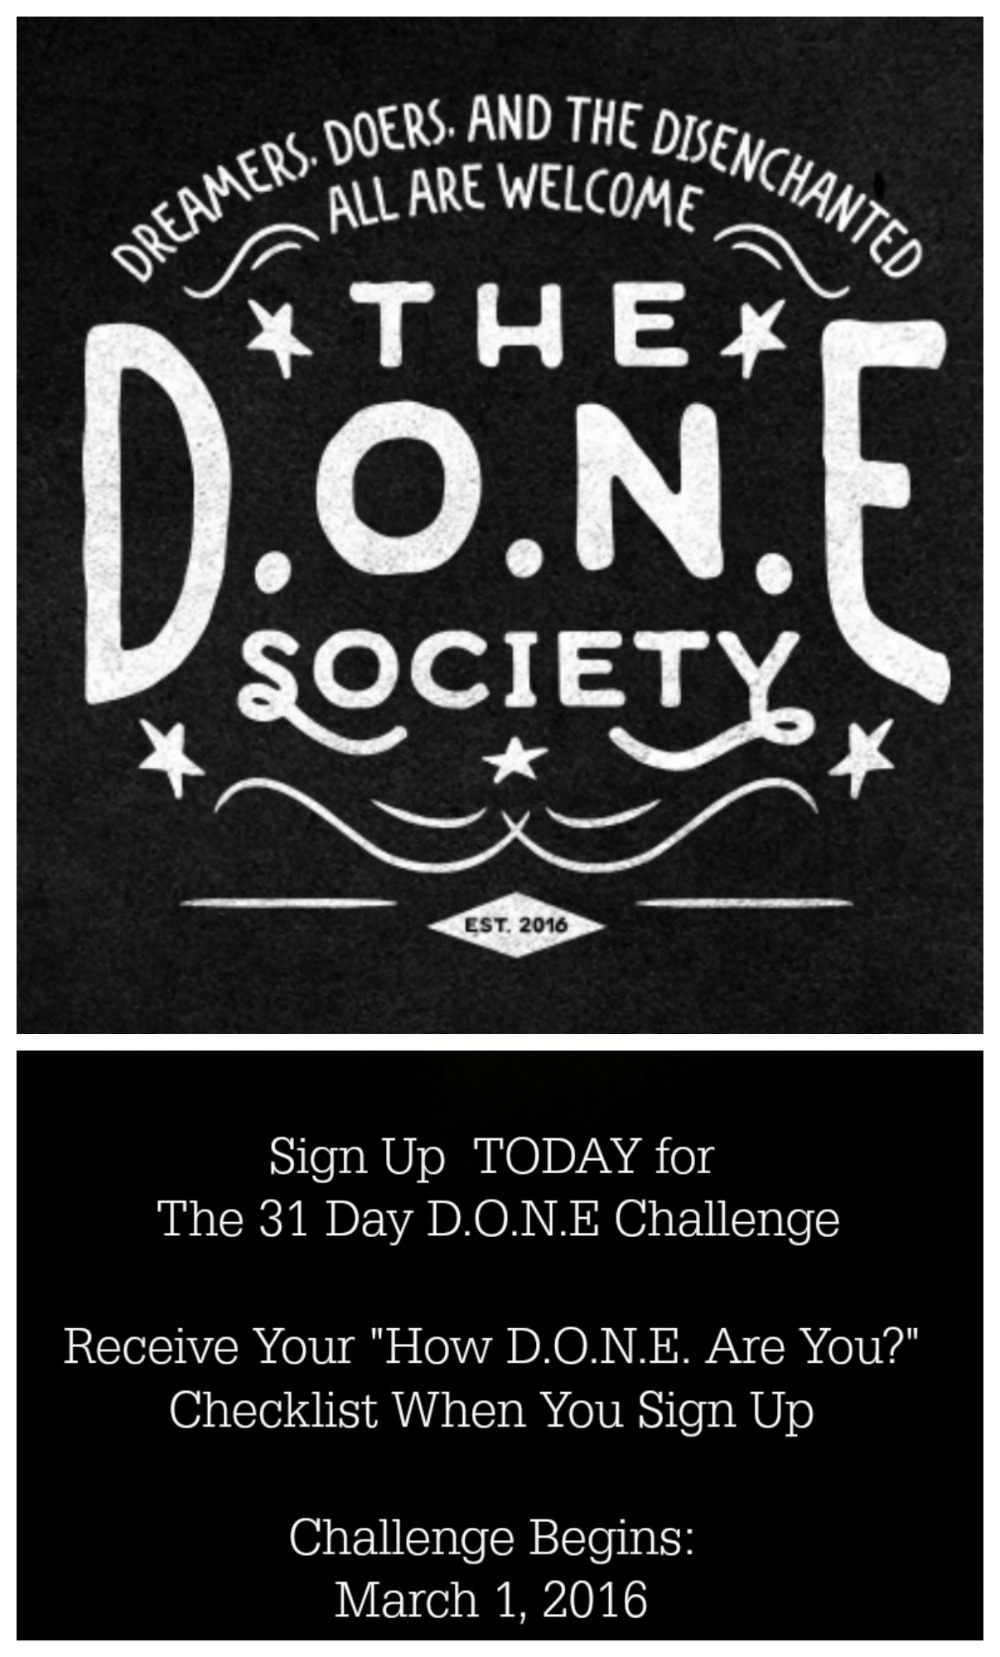 The D.O.N.E. Society-Spread the Word!